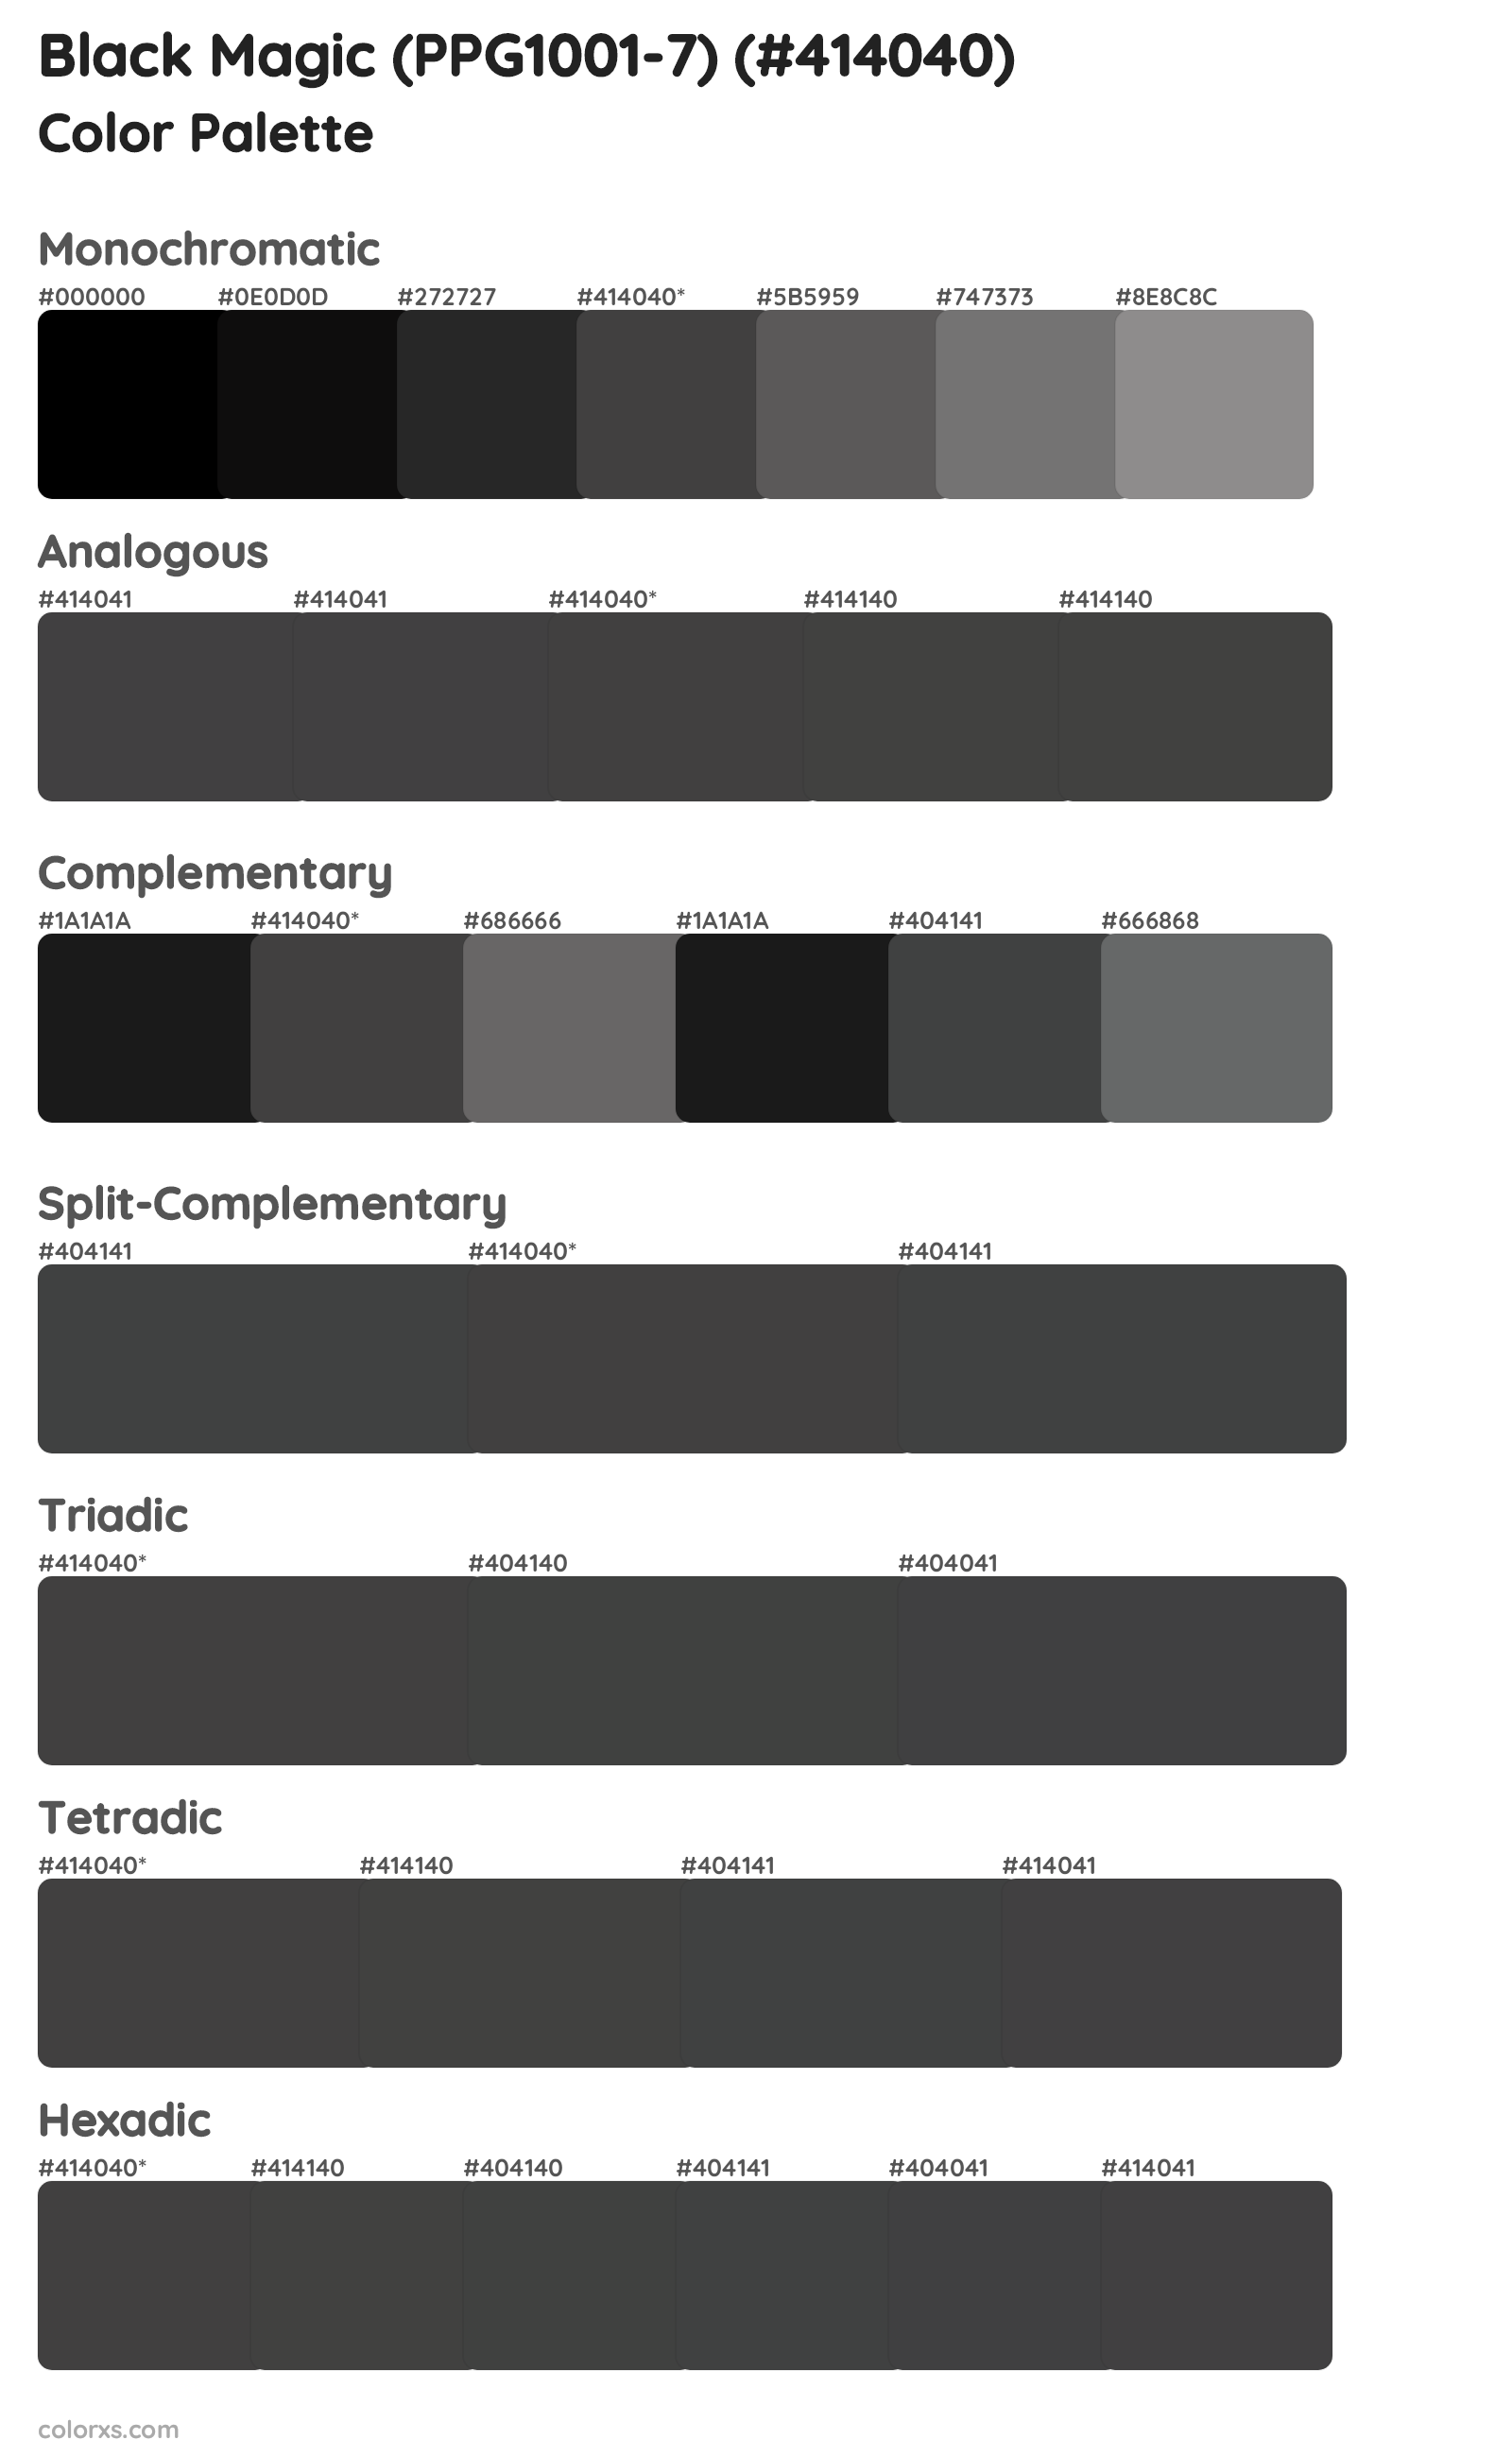 Black Magic (PPG1001-7) Color Scheme Palettes